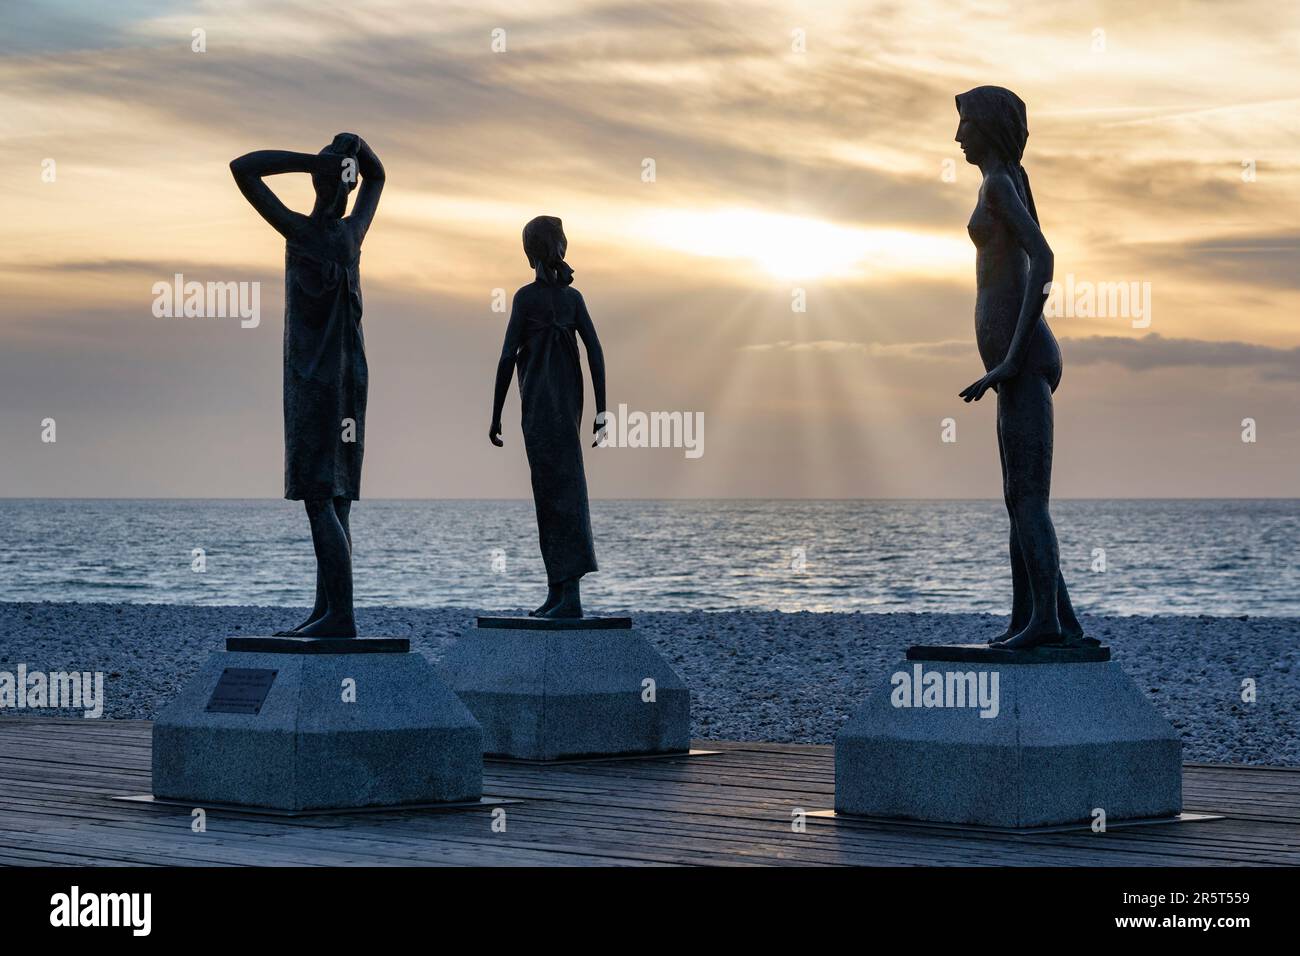 Frankreich, Normandie, seine Maritime, Fecamp, Badzeit, Werke von Dominique Denry, drei Bronzestatuen an der Strandpromenade Stockfoto